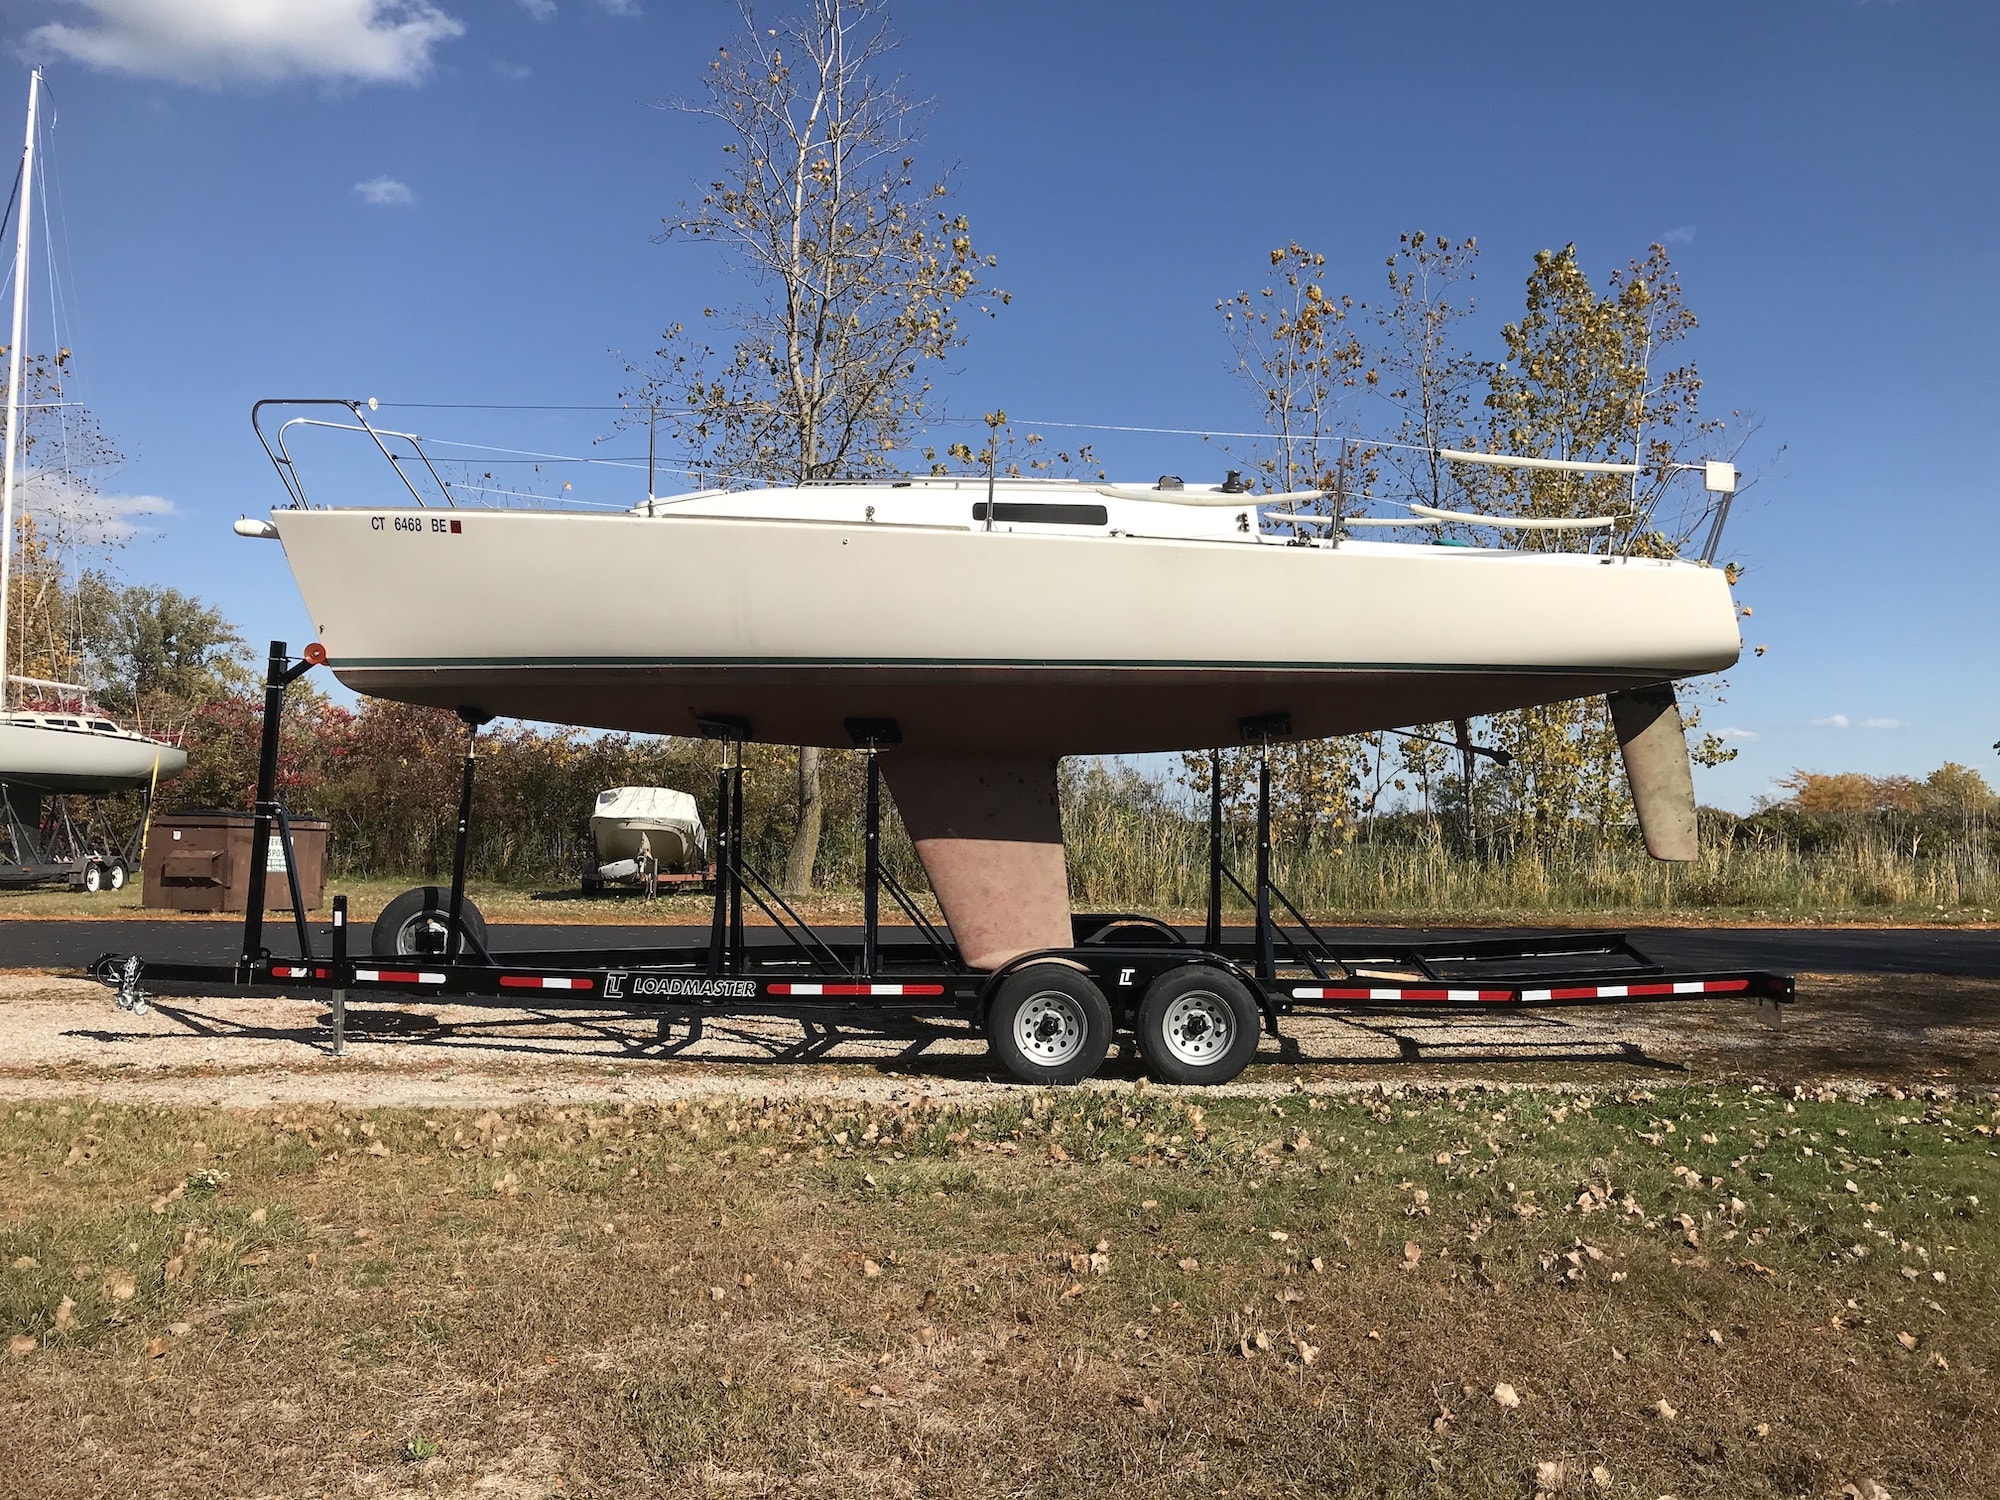 40 foot sailboat trailer